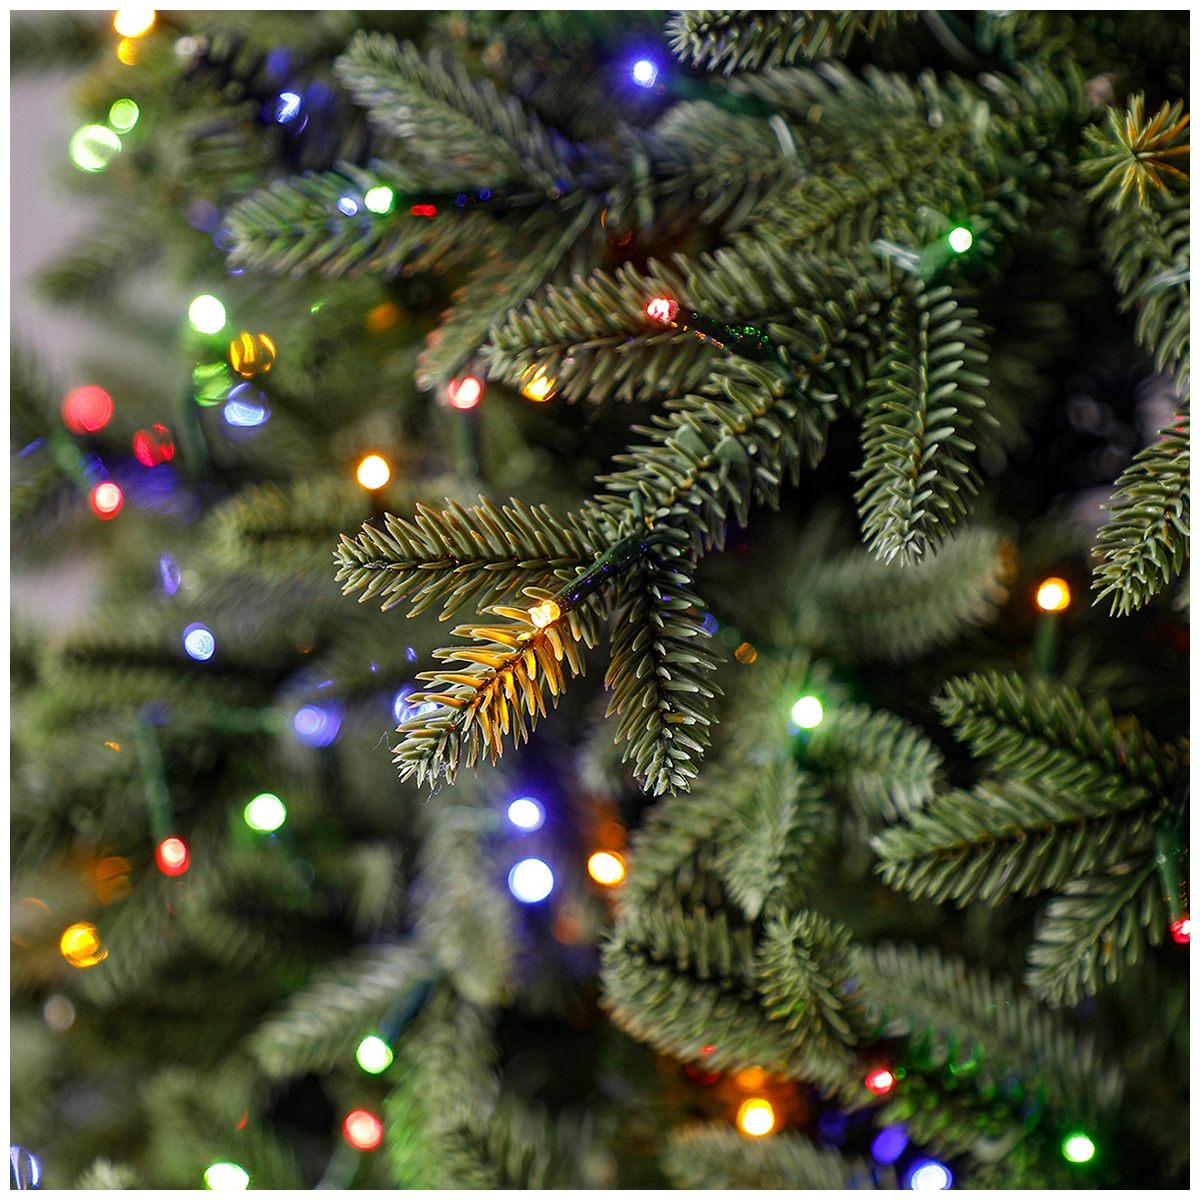 Pre-Lit 2.74m Aspen Micro Dot LED Christmas Tree